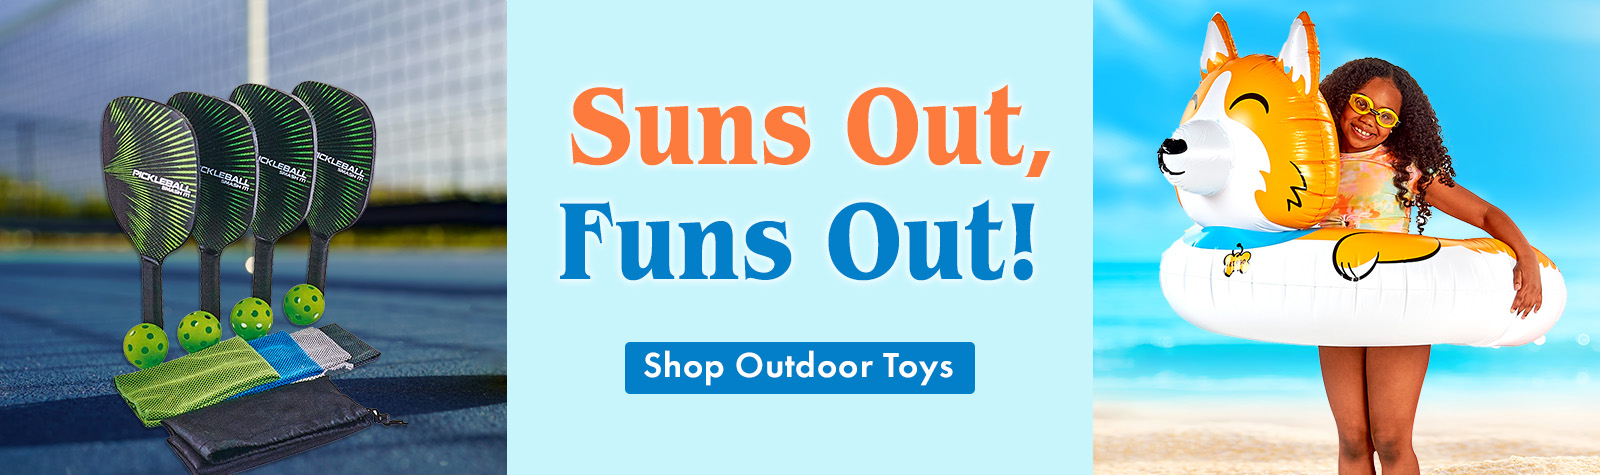 Shop Outdoor Toys